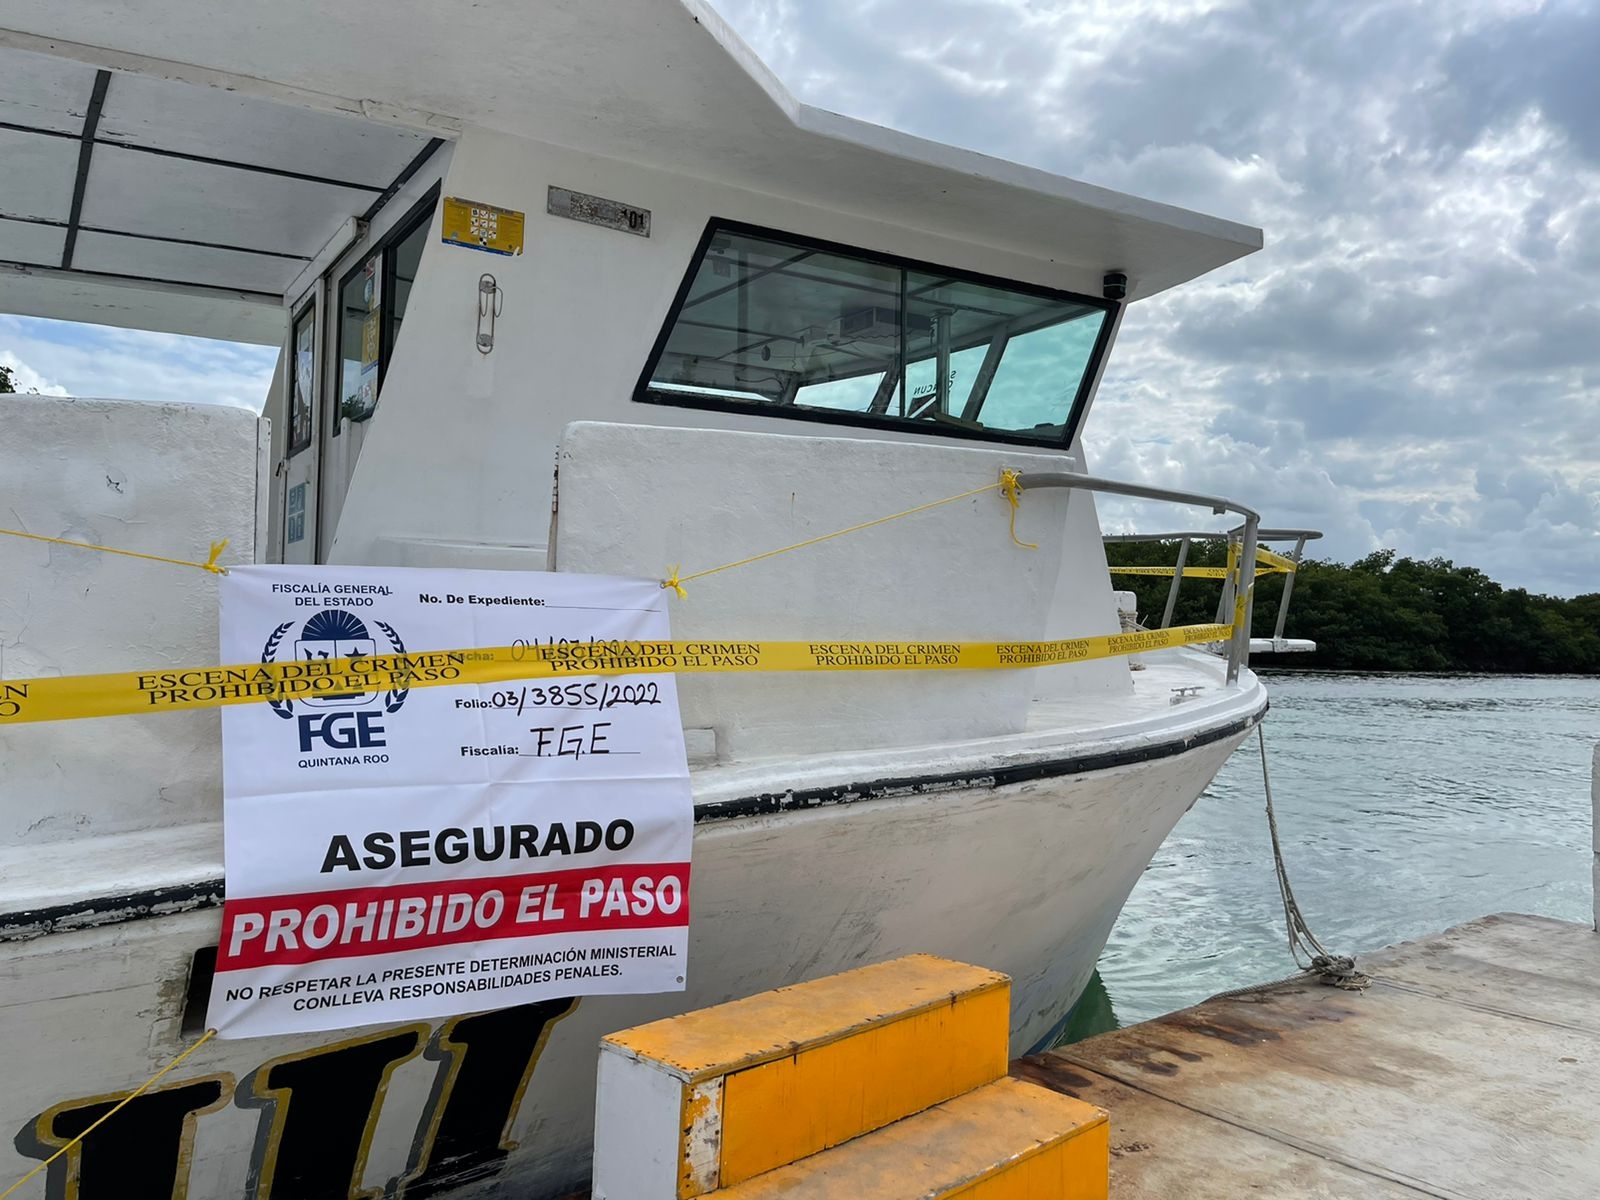 La embarcación fue asegurada tras la muerte de los dos turistas estadounidenses en Isla Mujeres, Quintana Roo